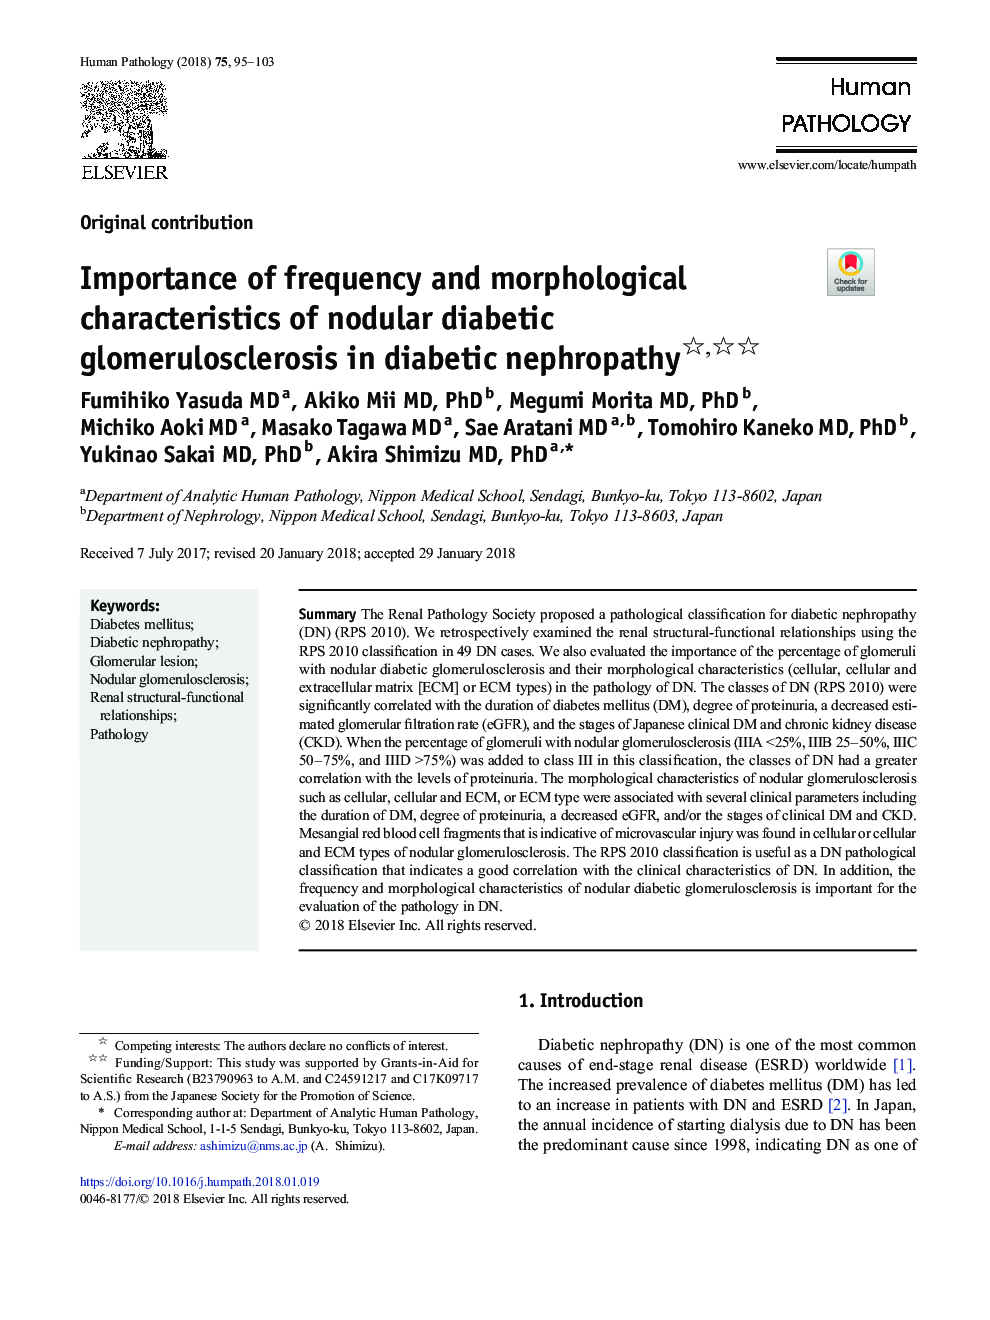 اهمیت فرکانس و ویژگی های مورفولوژیکی گلومرول اسکلروز غده گلی در نفروپاتی دیابتی 